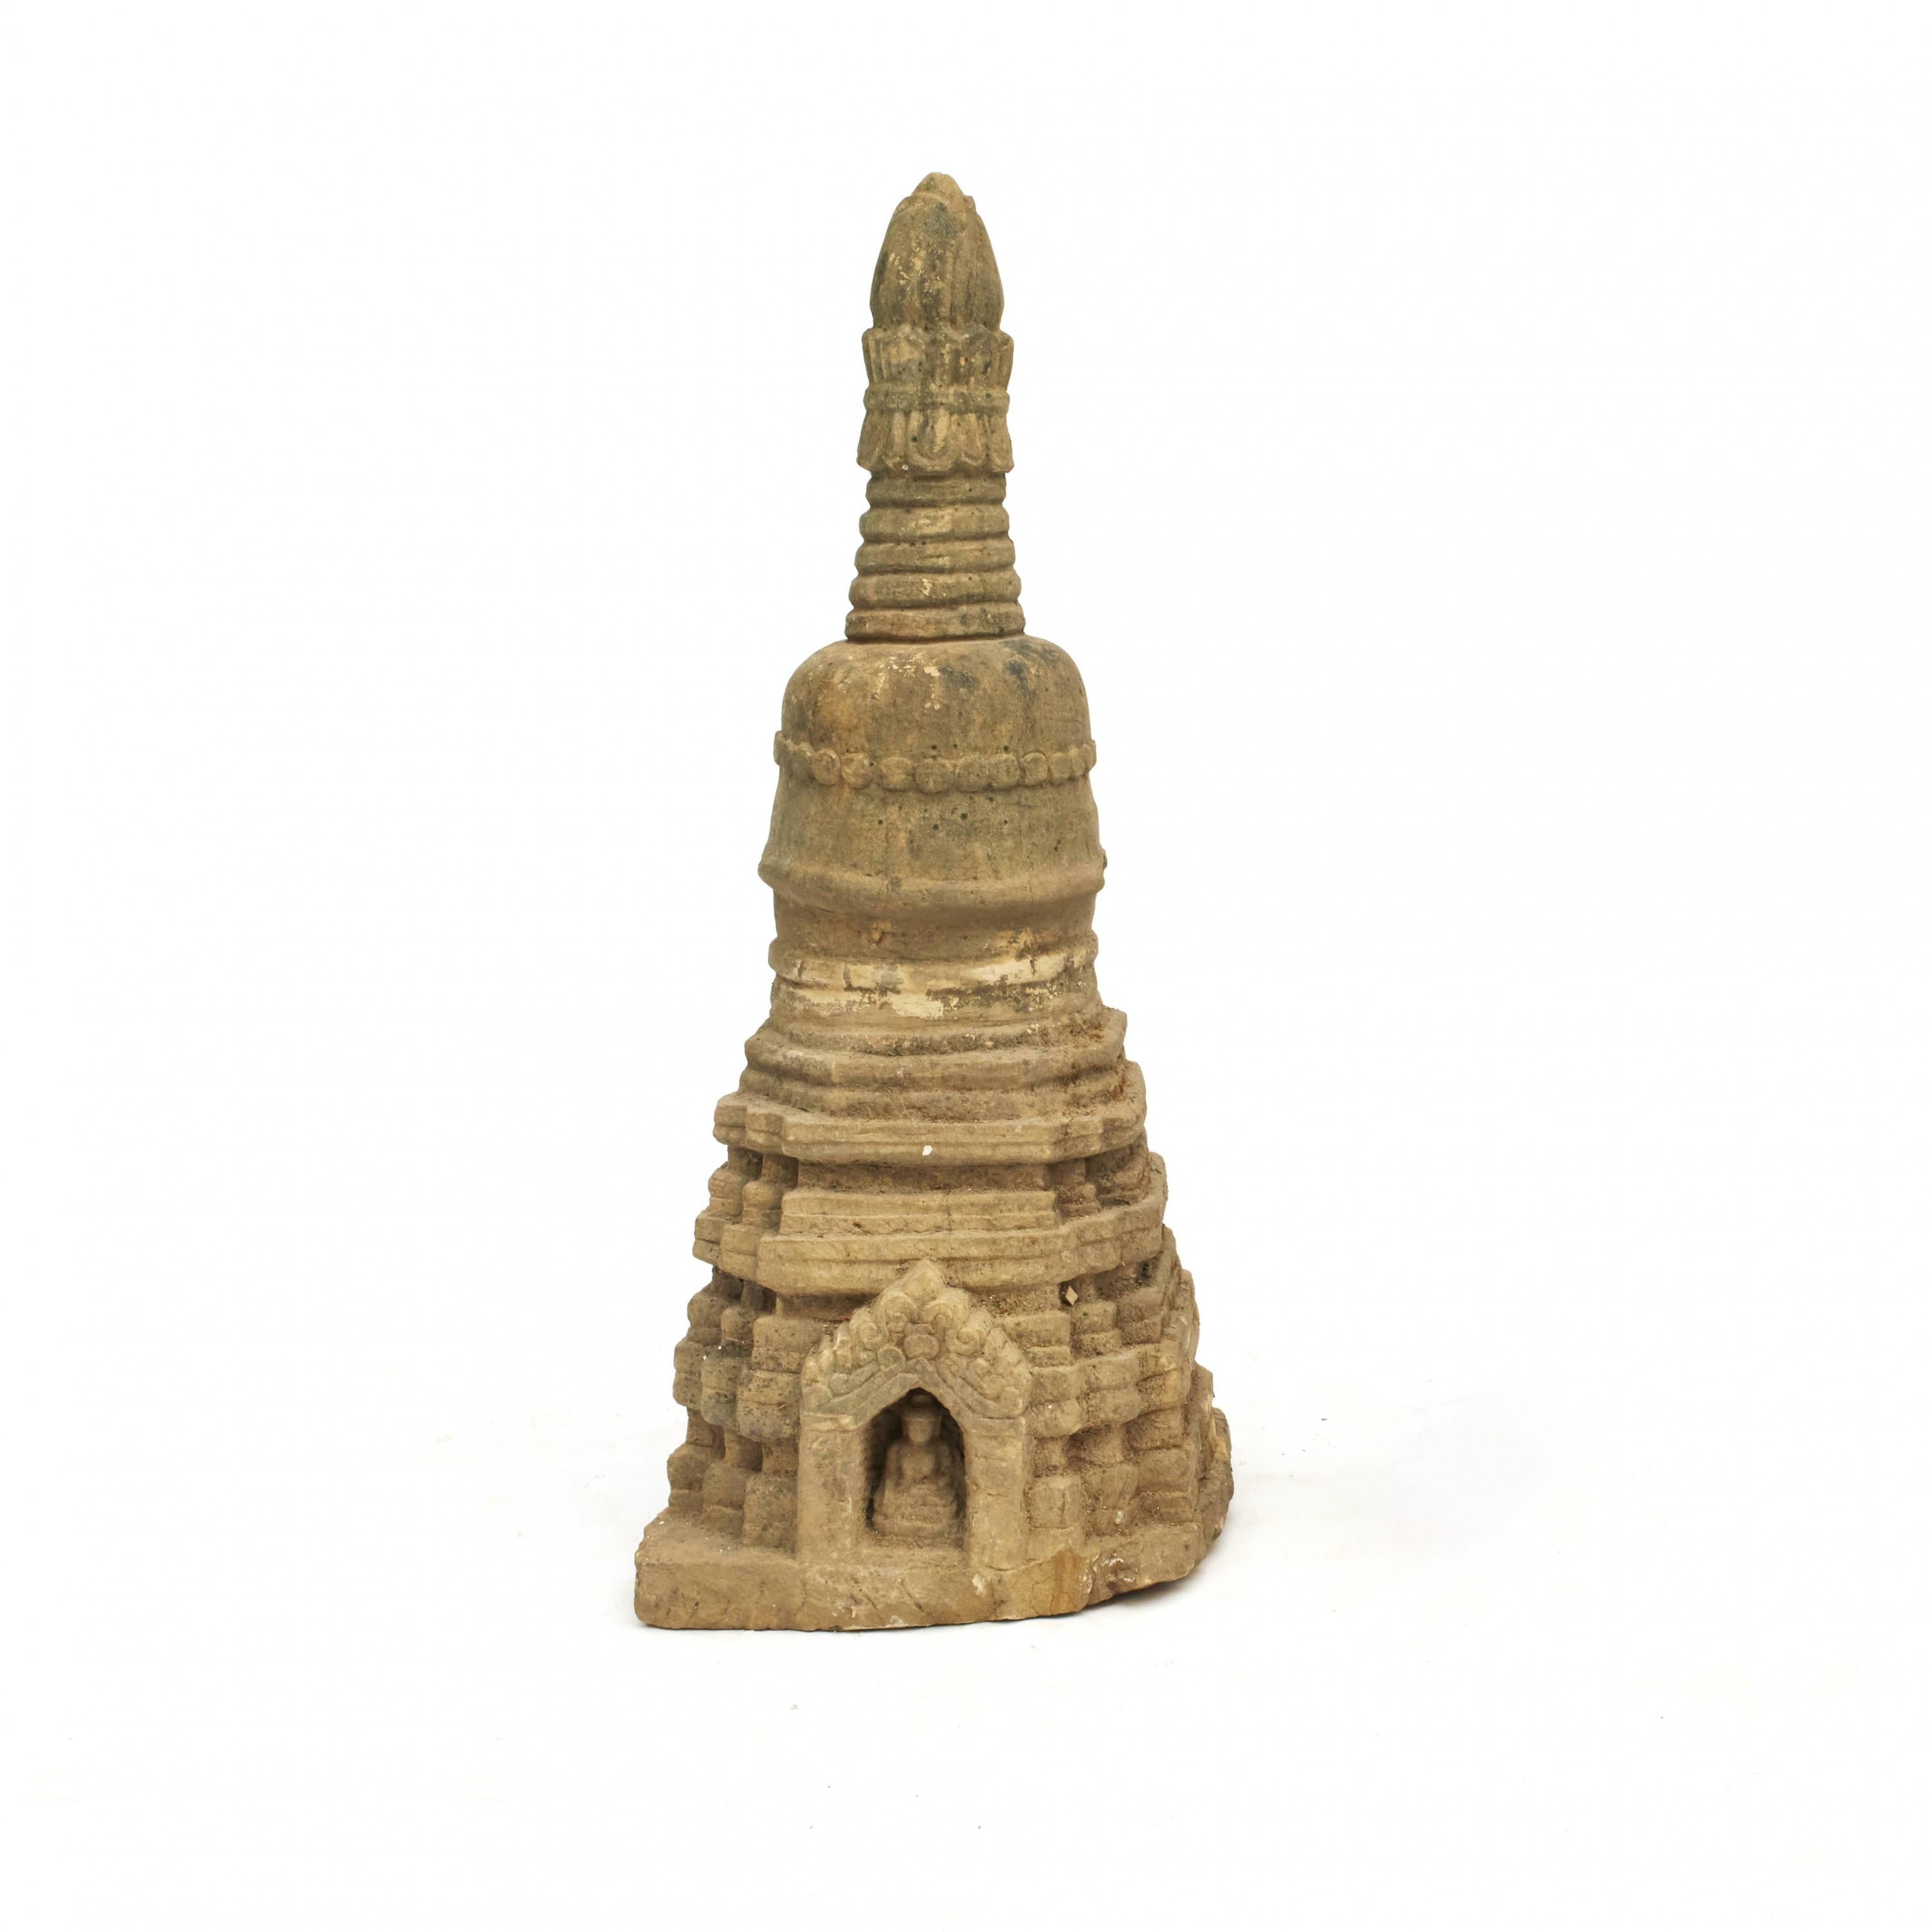 Seltene Stupa-Skulptur, 400-600 Jahre alt, in Sandstein gehauen. In originalem, unberührtem und gut erhaltenem Zustand. Aus Arakan in Birma.
Typische Stupa-Konstruktion mit quadratischer Basis, halbkugelförmiger Kuppel und kegelförmiger